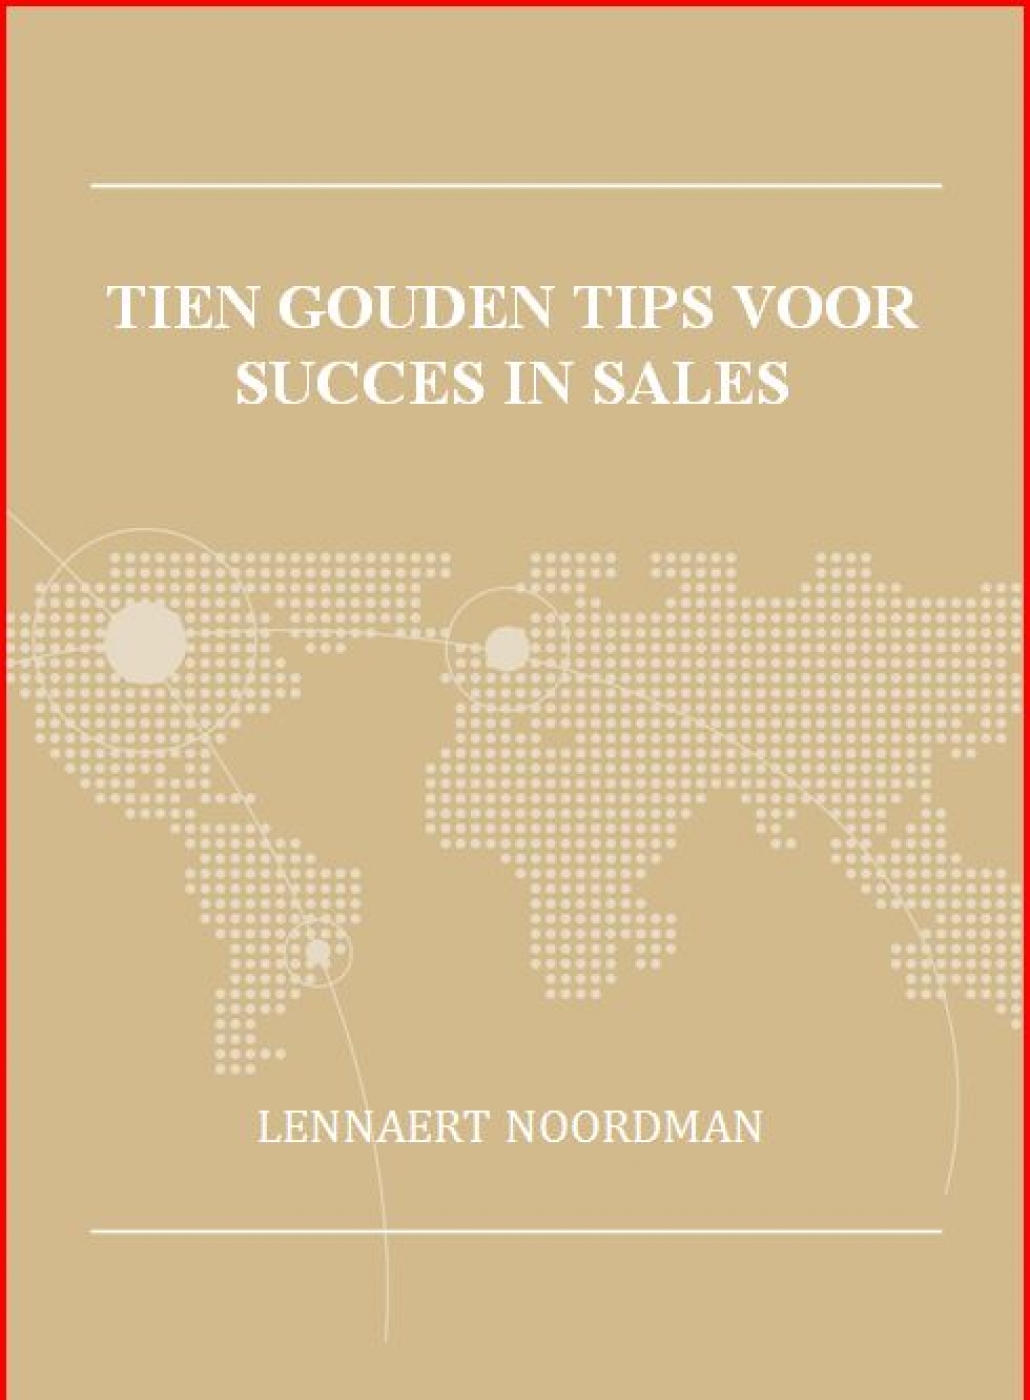 10 Gouden Tips voor succes in sales